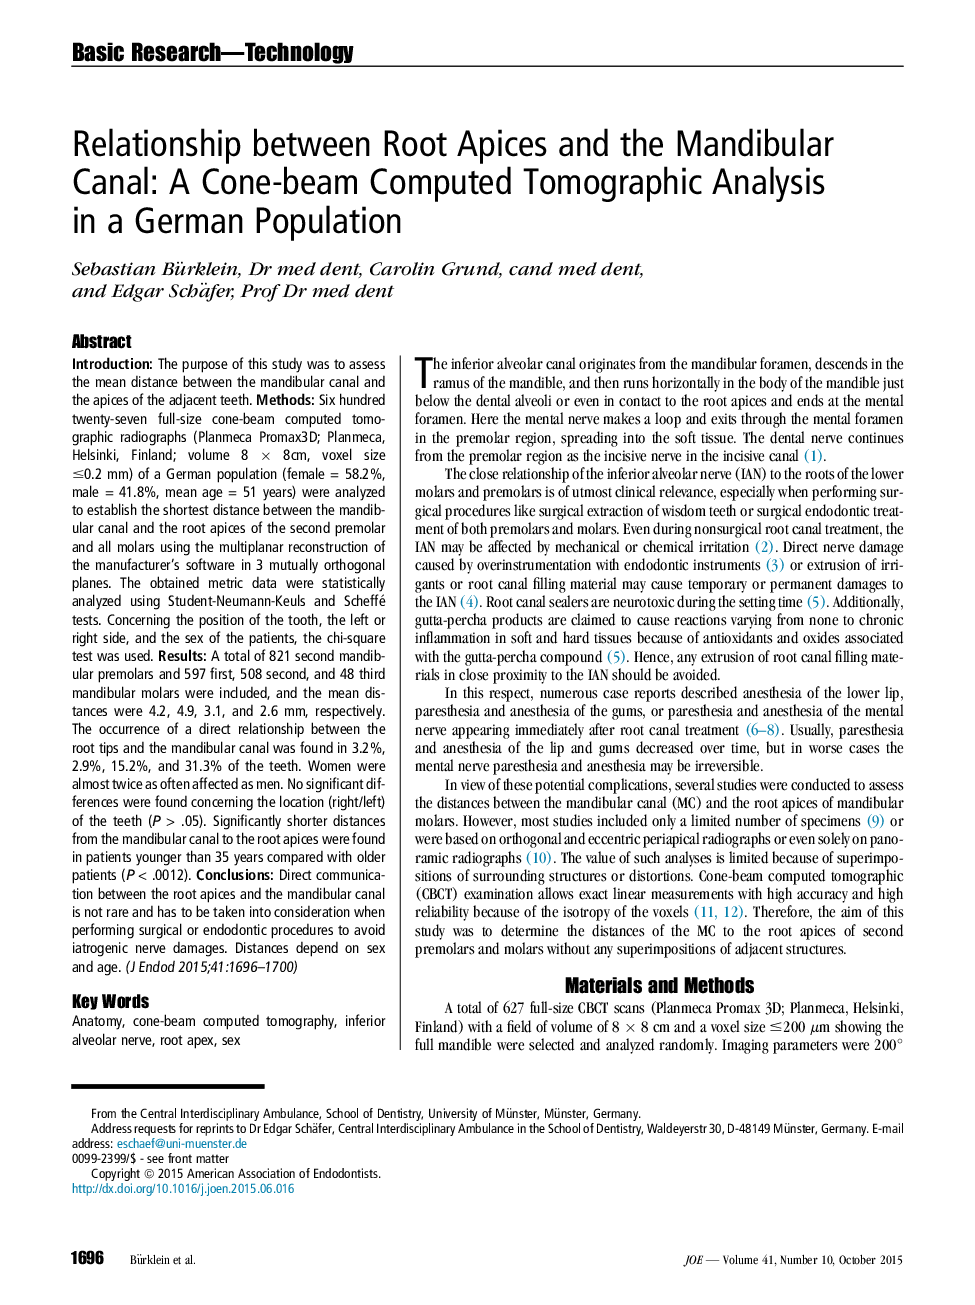 ارتباط آپیکس های ریشه با کانال مندیبول: تجزیه و تحلیل توموگرافی کامپیوتری با تراکم کمان در یک جمعیت آلمانی 